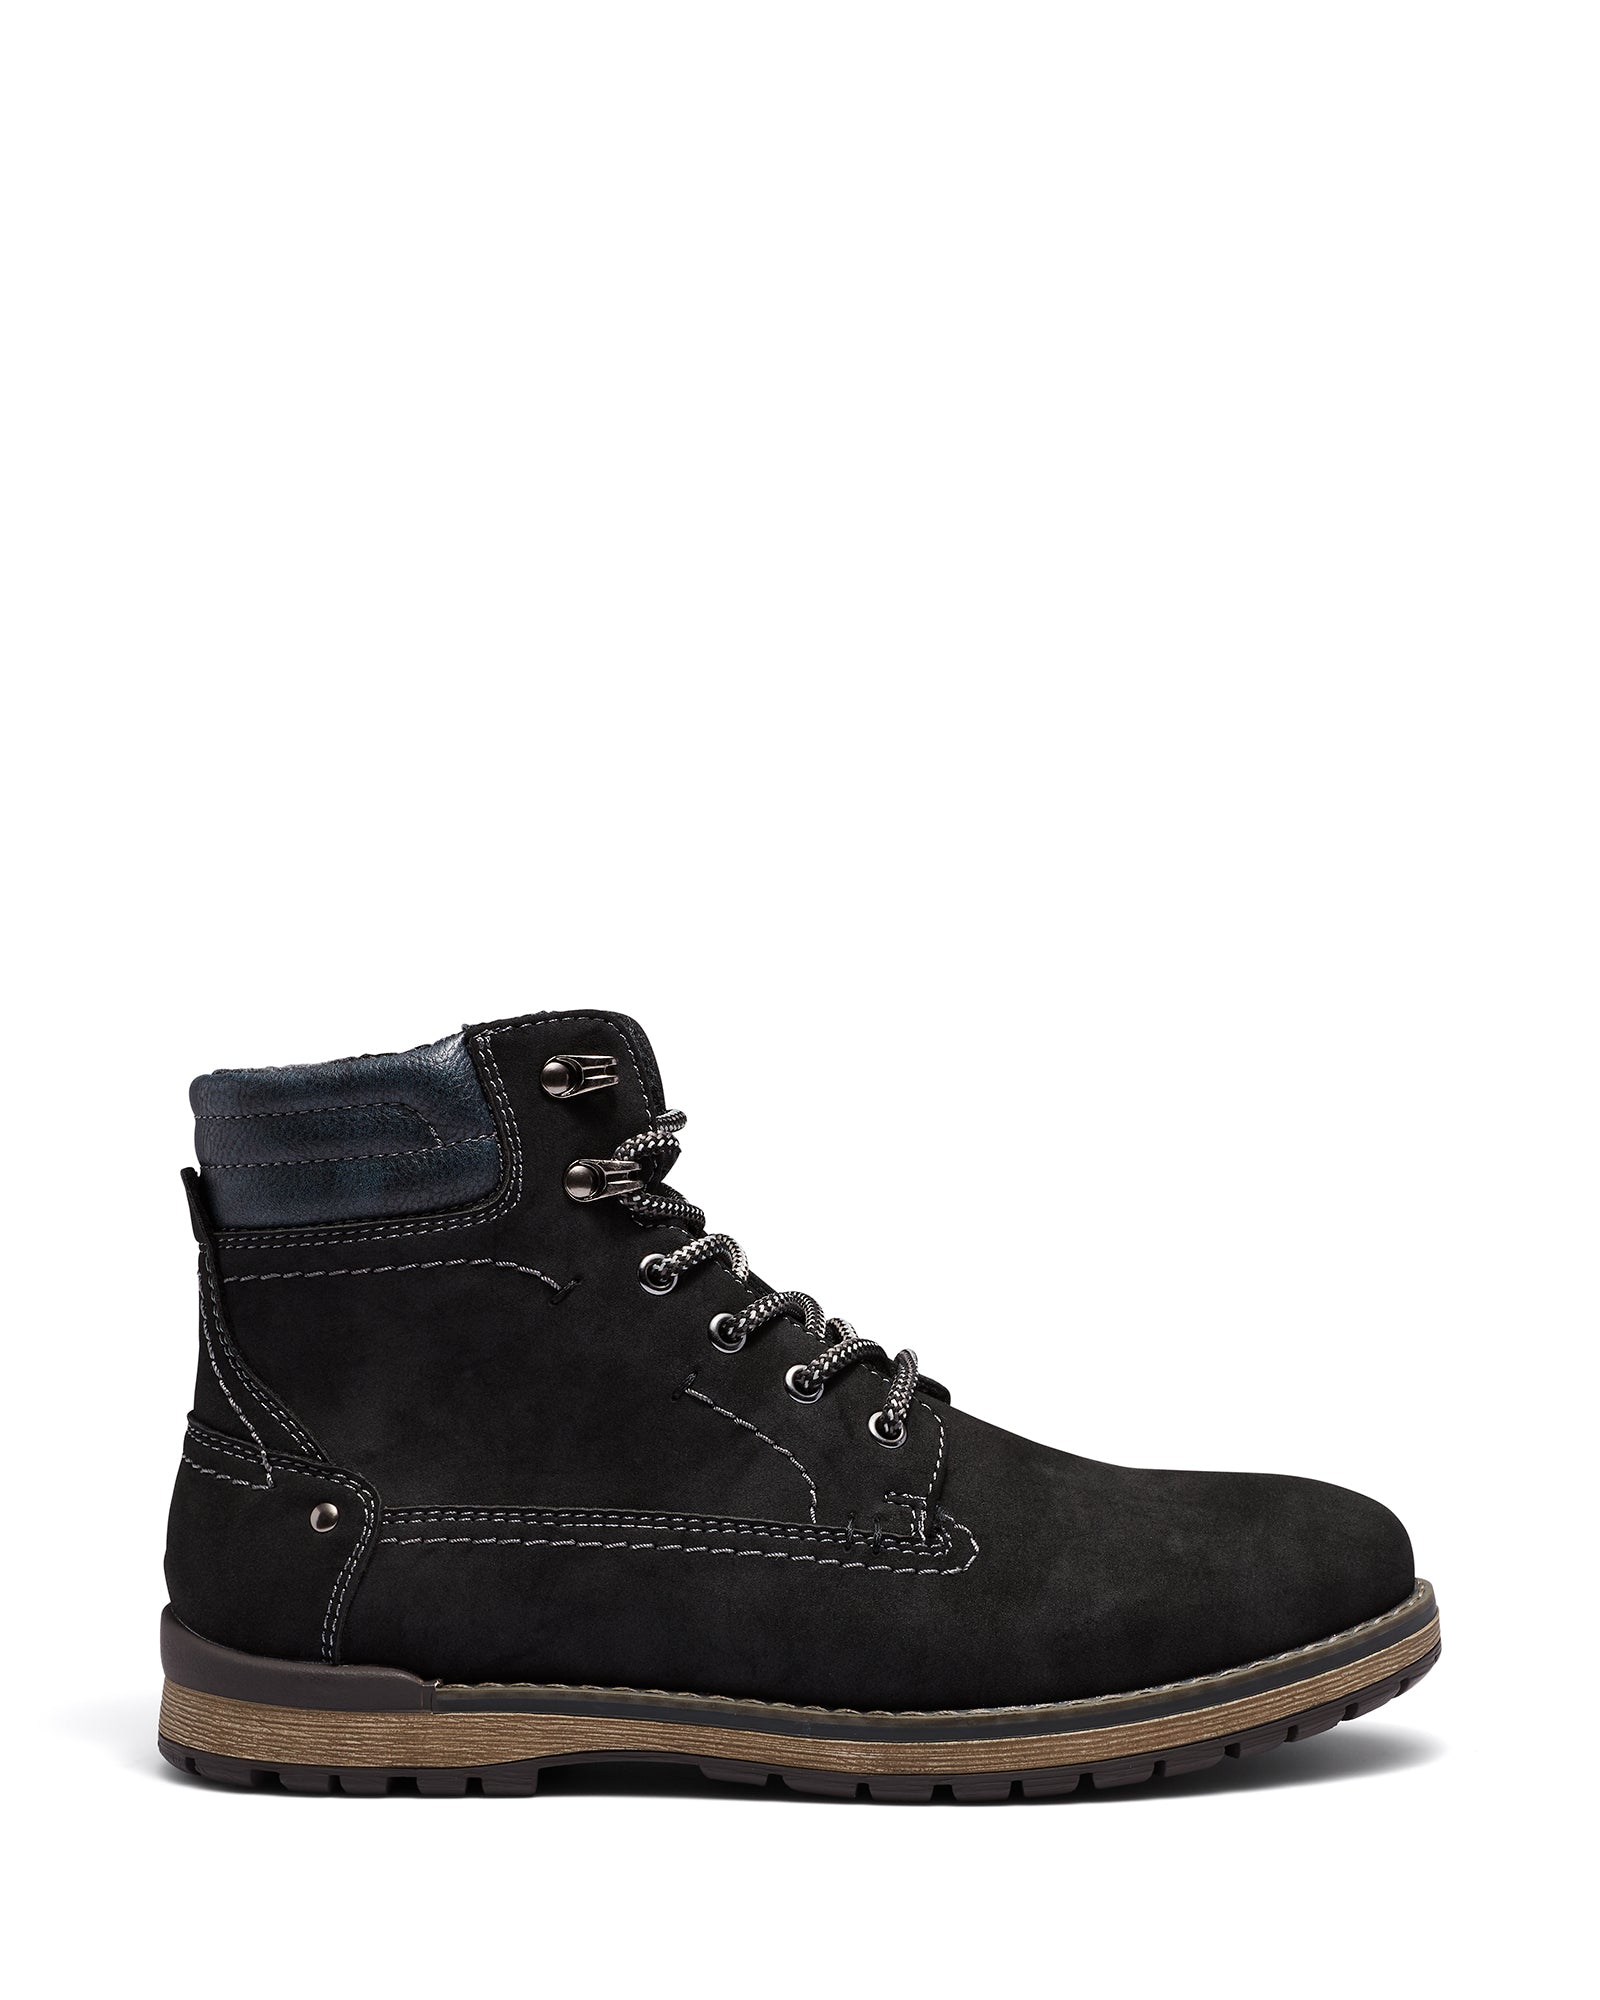 Uncut Shoes Thatcher Black | Men's Boot | Combat Boot | Lace Up